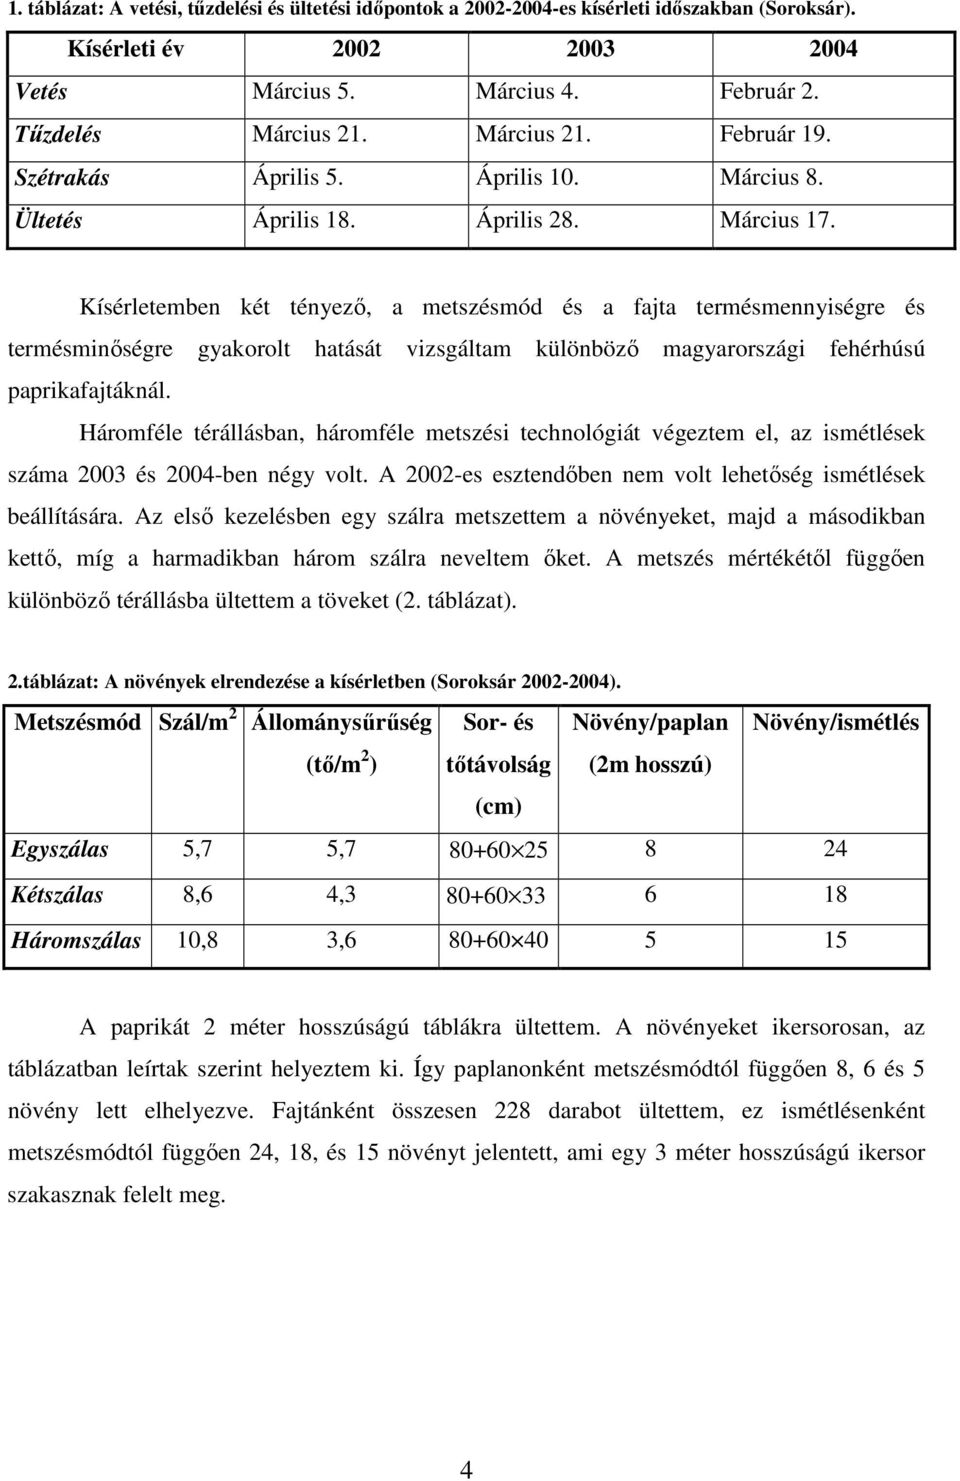 Kísérletemben két tényezı, a metszésmód és a fajta termésmennyiségre és termésminıségre gyakorolt hatását vizsgáltam különbözı magyarországi fehérhúsú paprikafajtáknál.